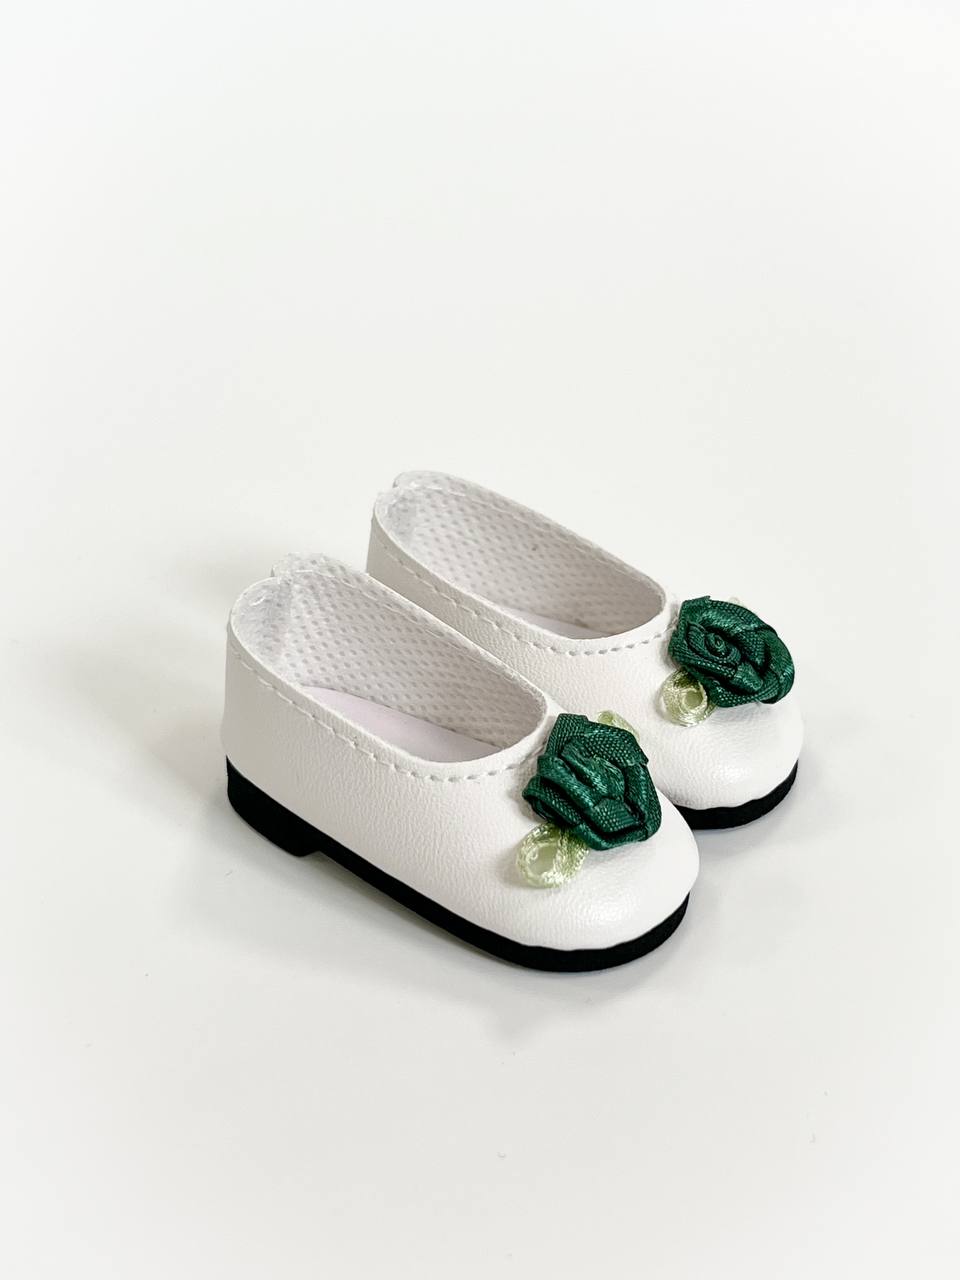 Paola Reina Туфли белые с зеленым цветком, арт. 63202